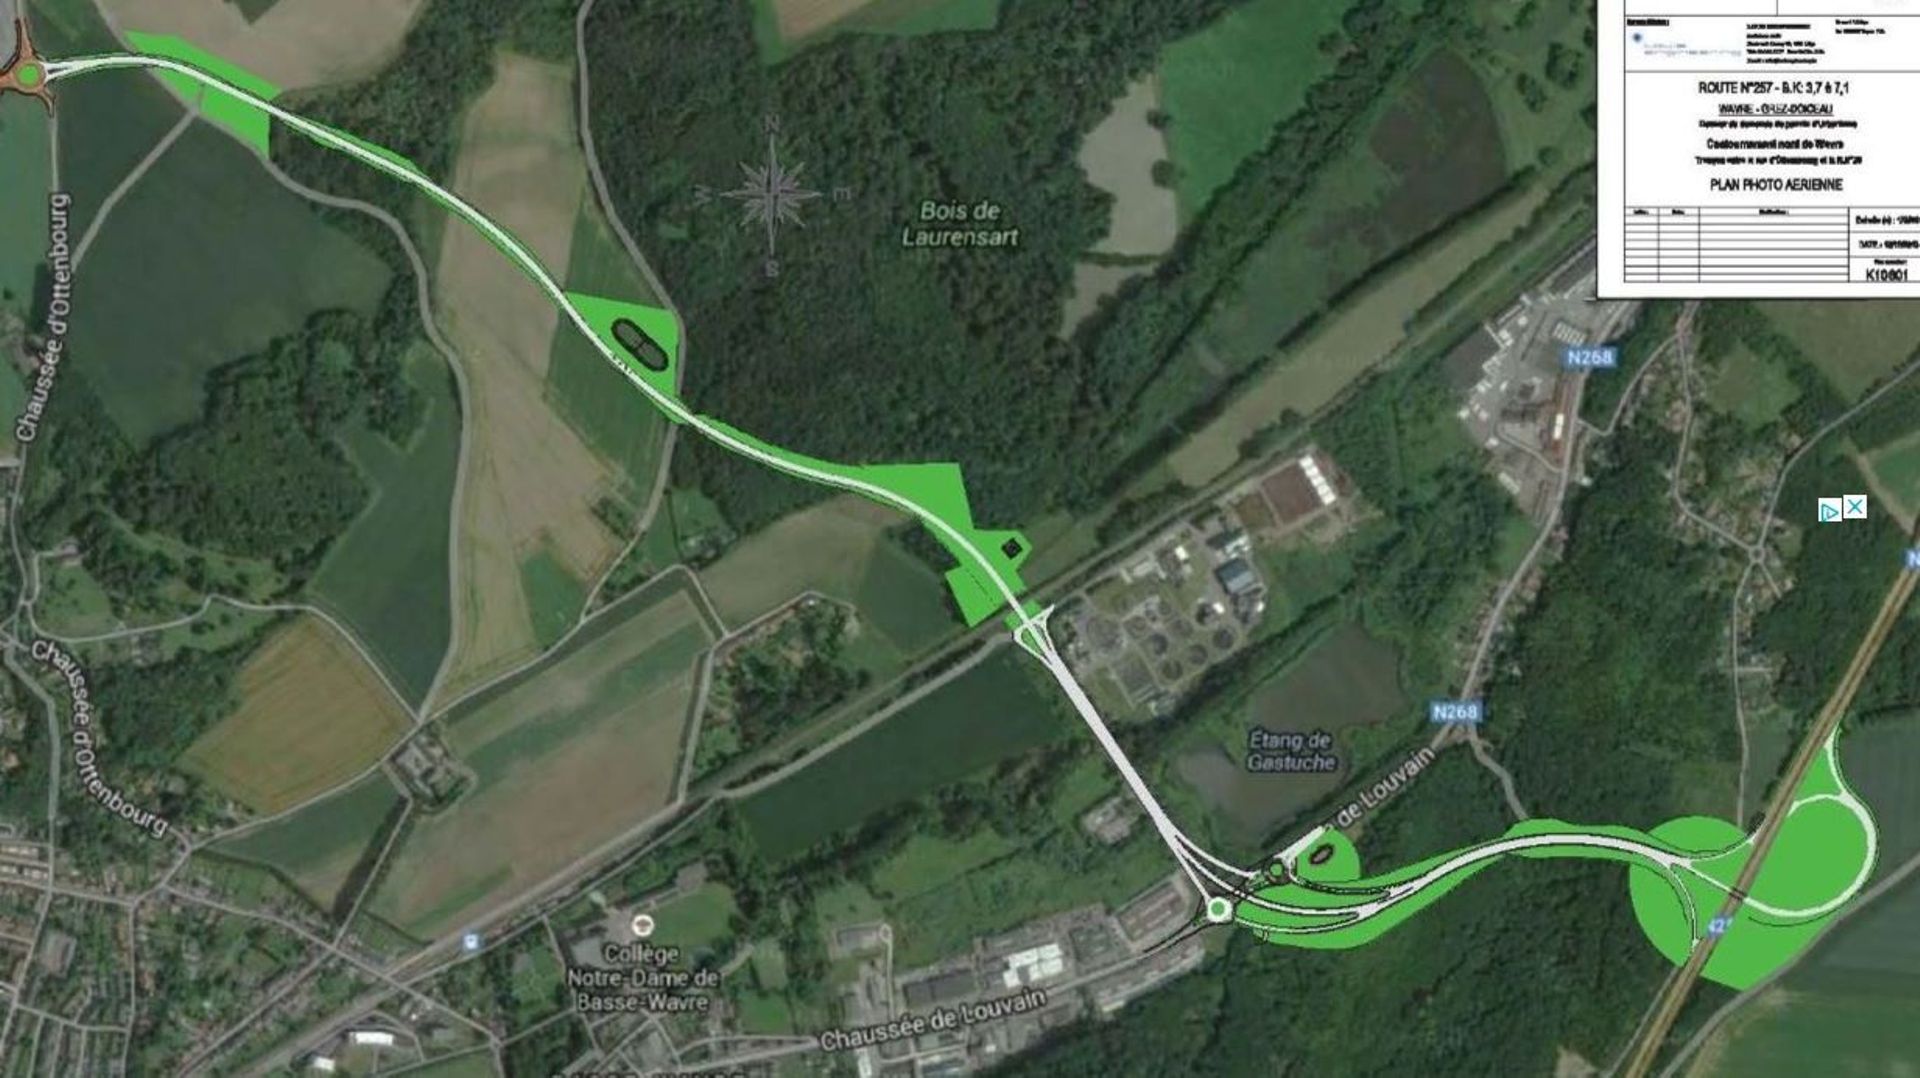 En haut à gauche, le rond-point situé près de GSK dans le zoning nord. La nouvelle route traversera des zones agricoles et forestières pour rejoindre la N25 à Grez-Doiceau.